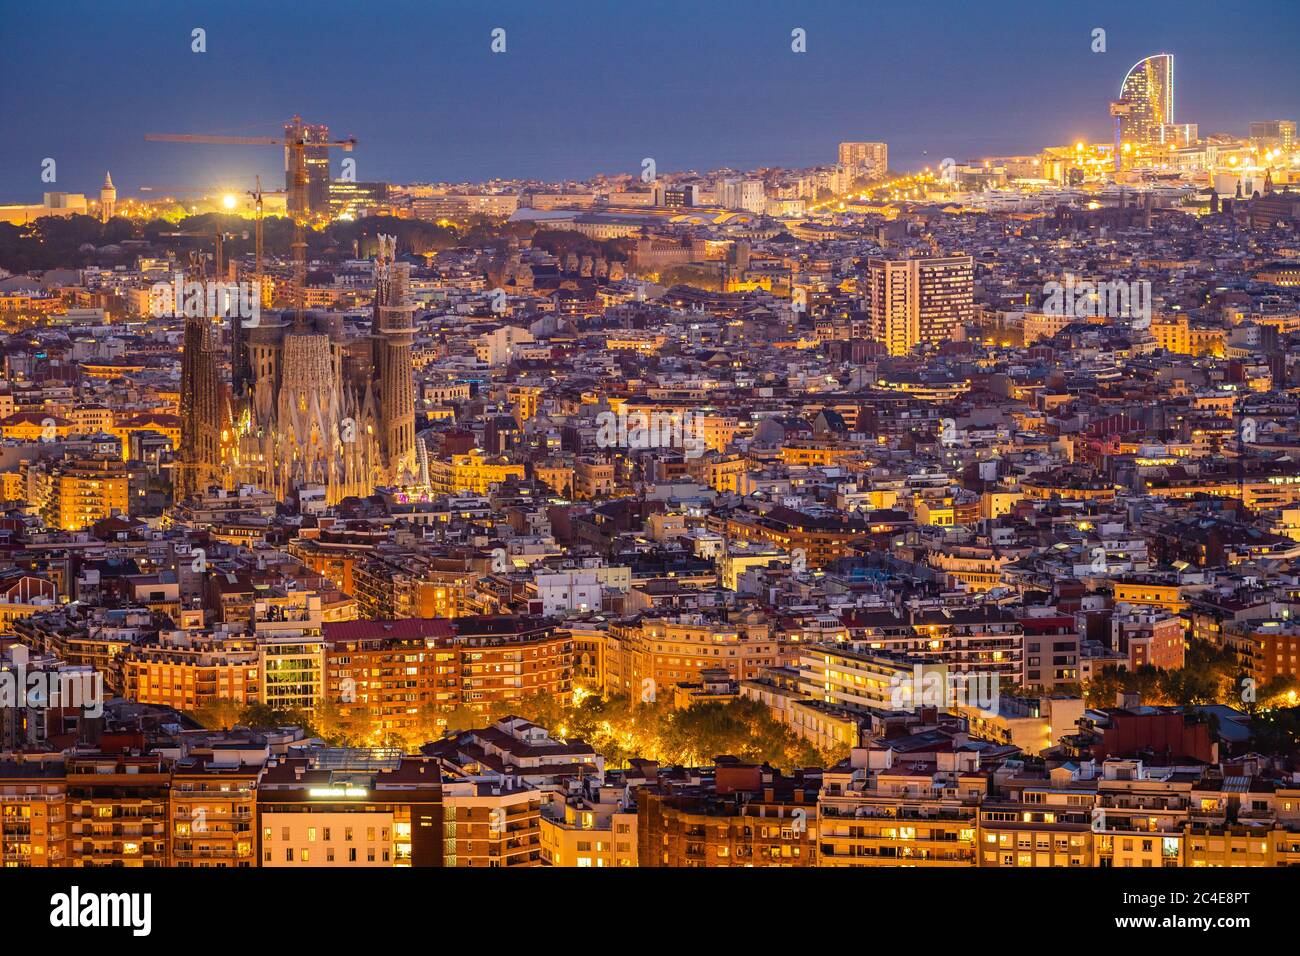 Vue aérienne du paysage urbain de Barcelone, avec le monument architectural de la basilique de la Sagrada Familia illuminée au crépuscule, Catalogne, Espagne. Banque D'Images